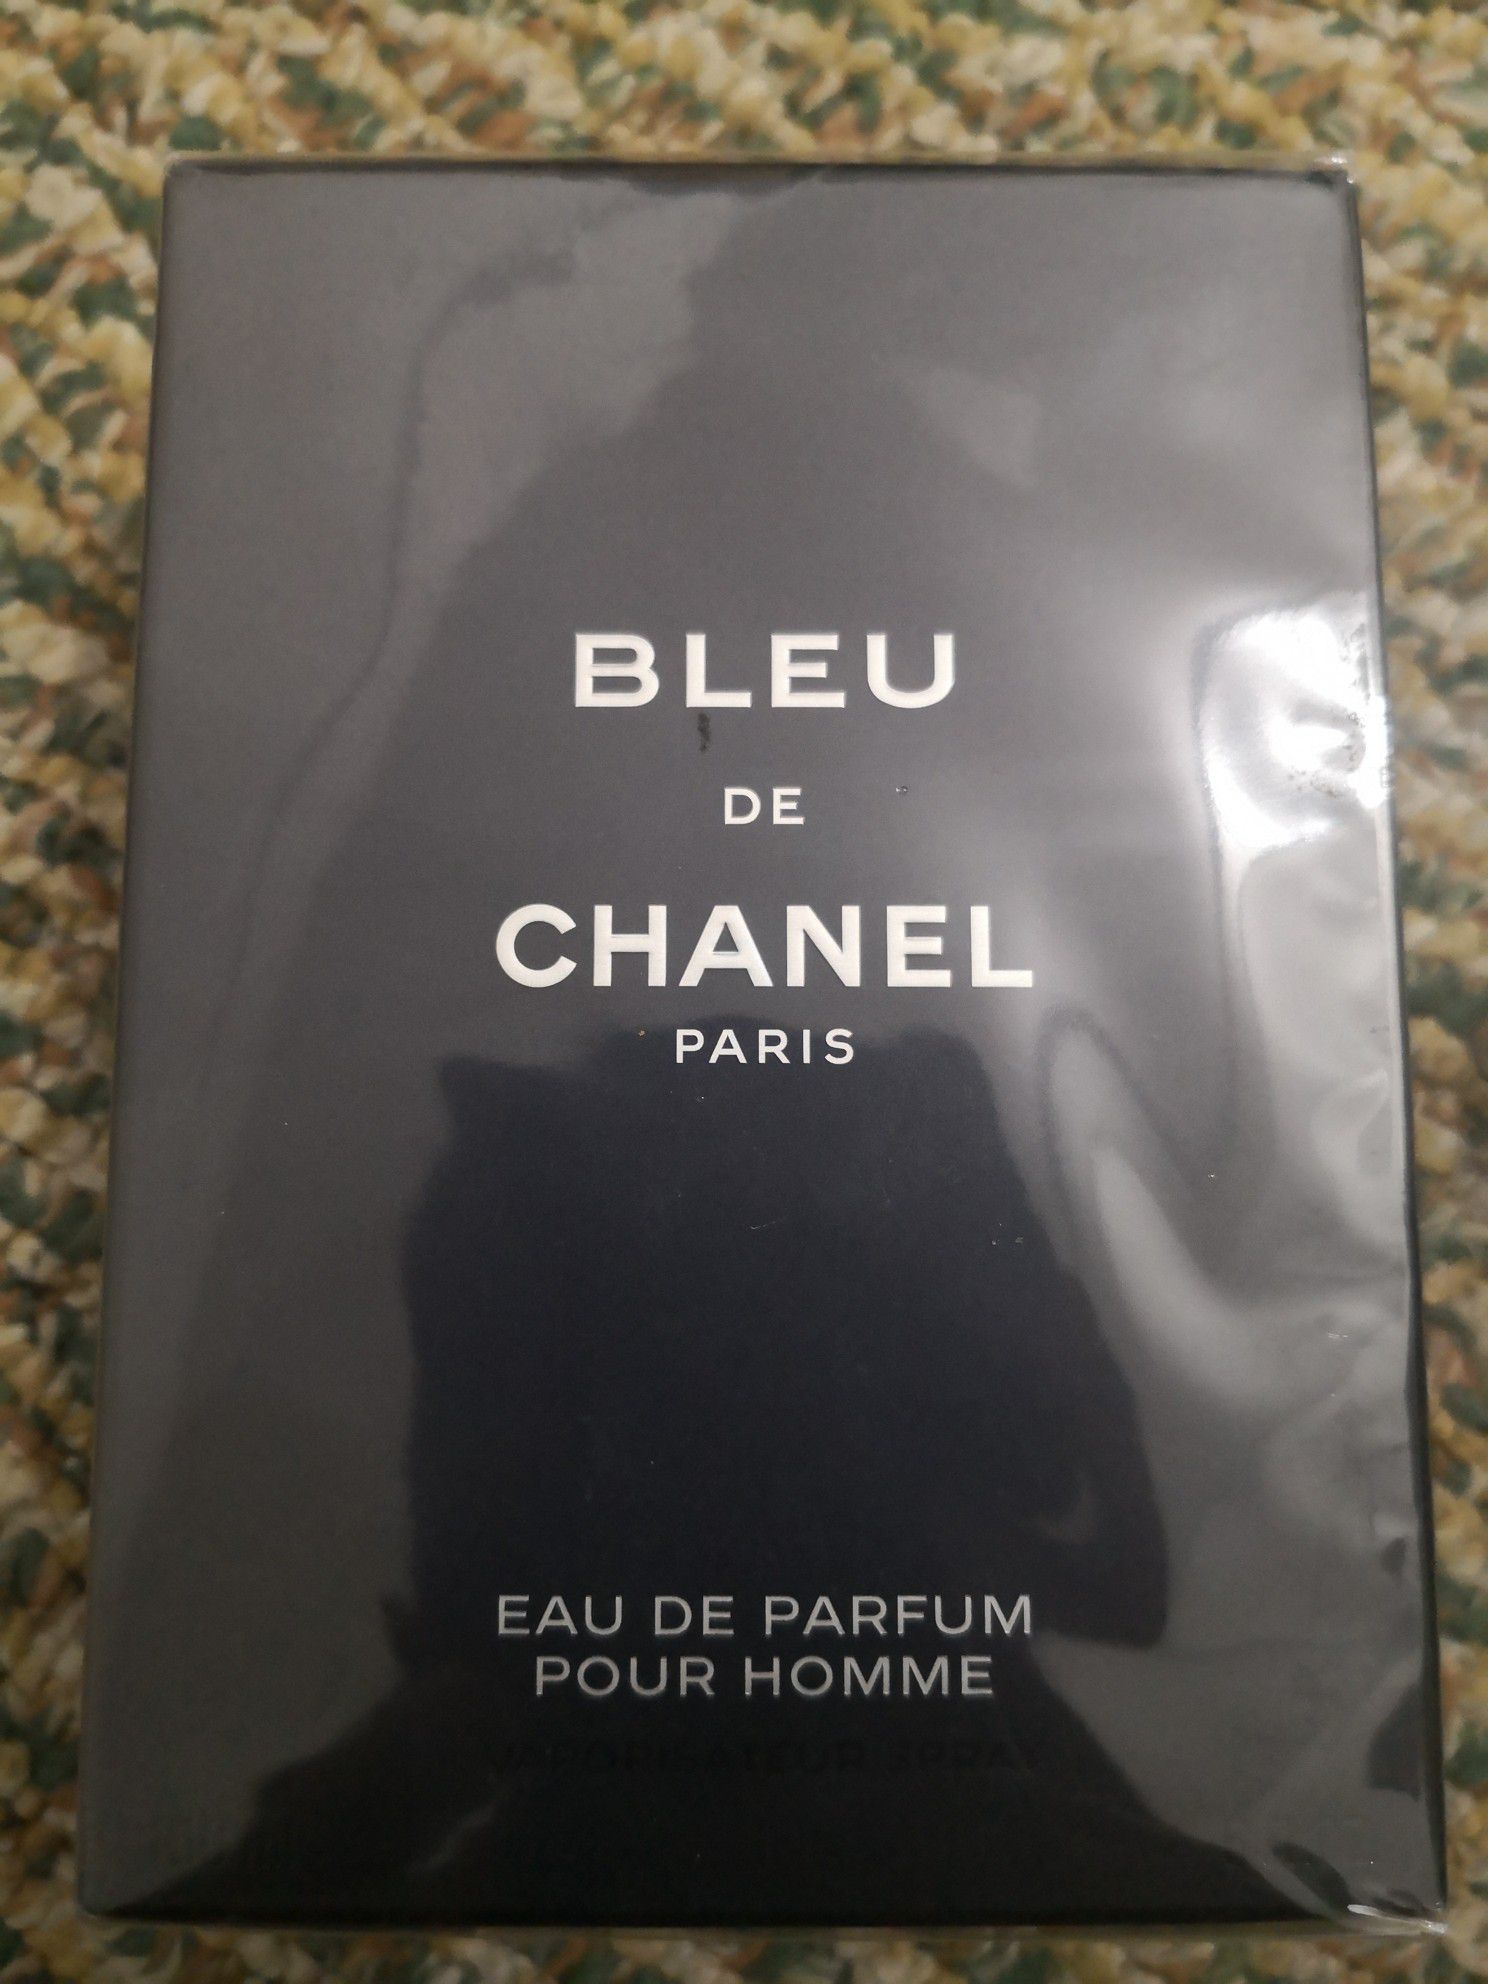 Bleu de Chanel perfum for men 150ml 5oz new sealed retails 155$plus tax